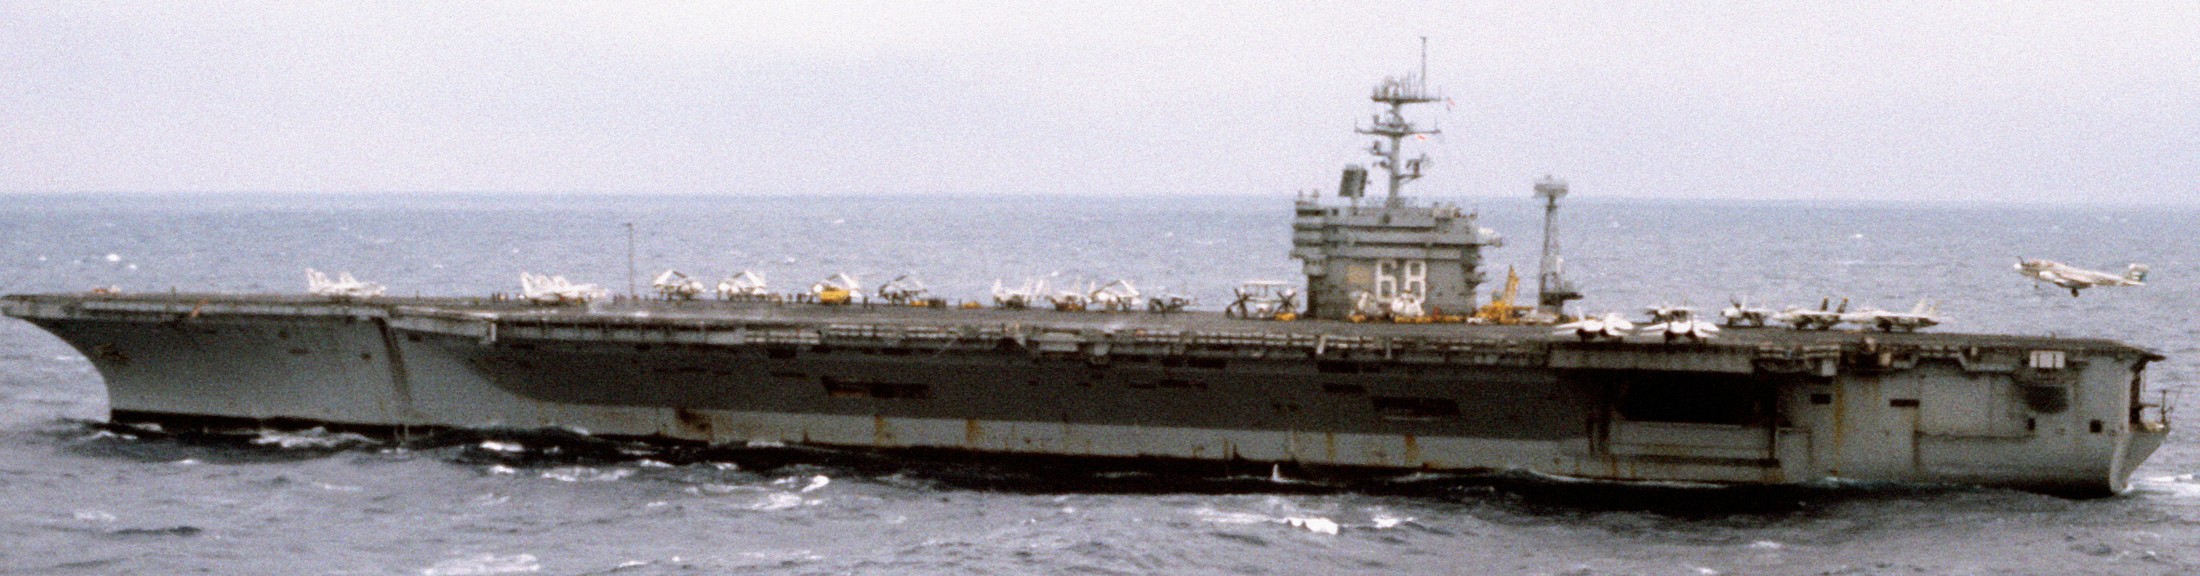 cvn-68 uss nimitz aircraft carrier air wing cvw-8 us navy 37